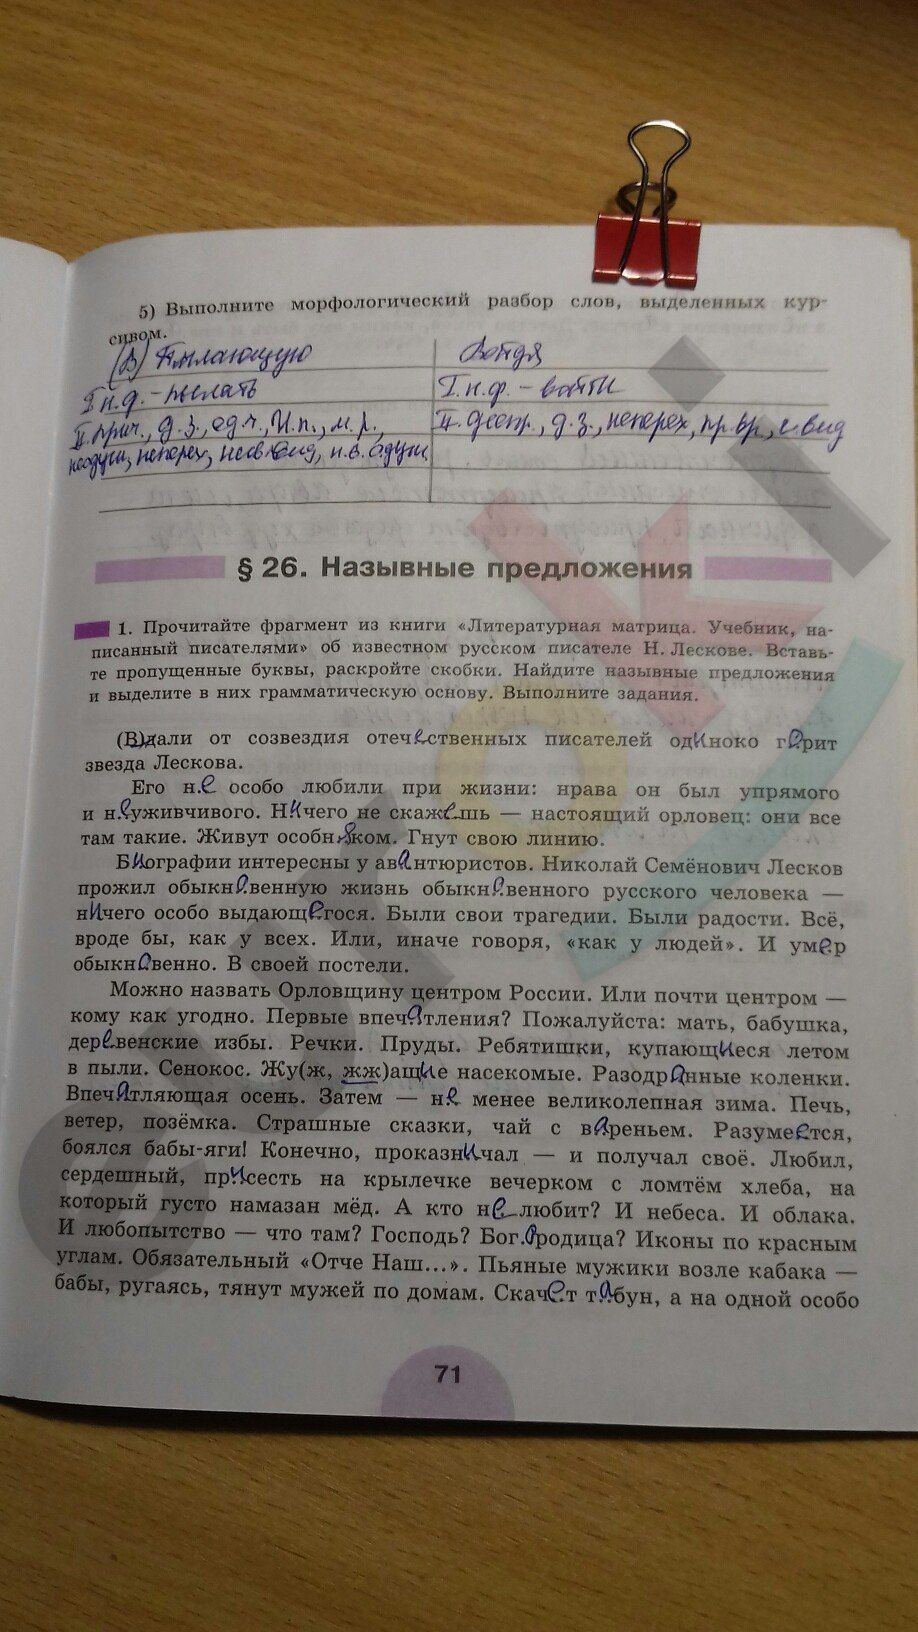 ГДЗ Русский язык 8 класс - стр. 71